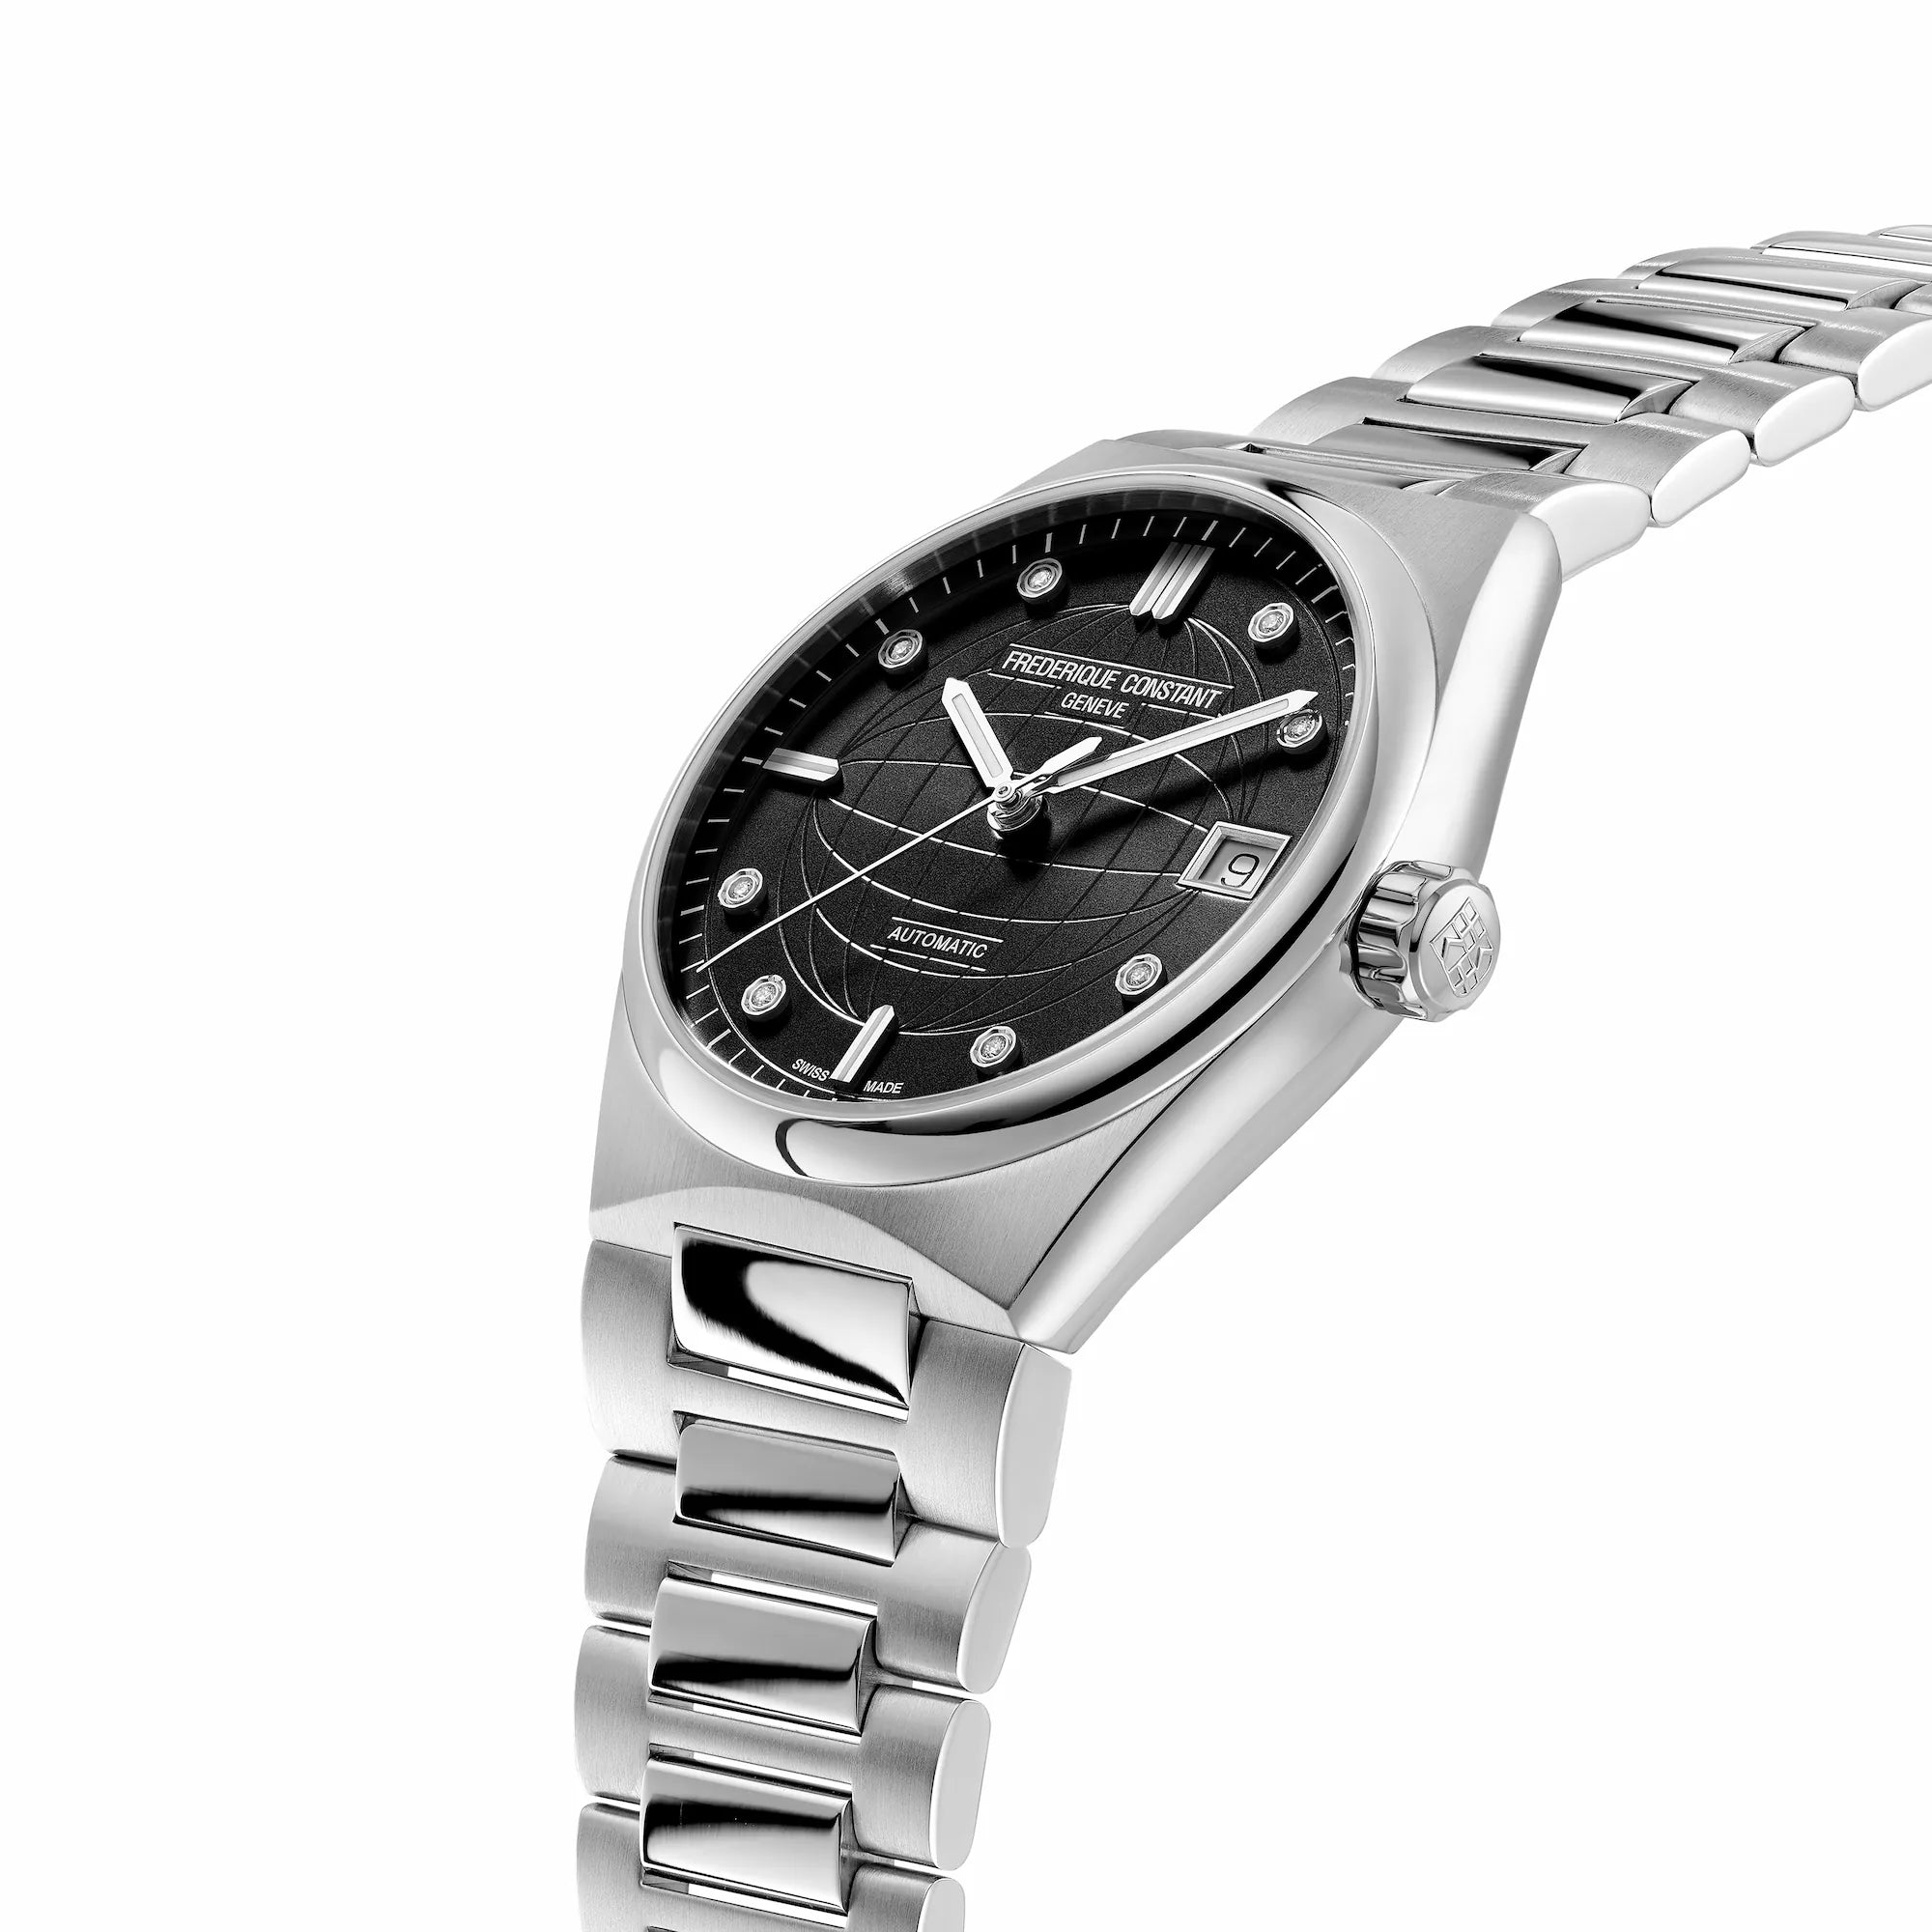 Leicht seitliche Ansicht der der Frederique Constant Uhr "Highlife Ladies Automatic" mit einem schwarzen Zifferblatt mit Diamant-Indizes und Edelstahl-Gehäuse